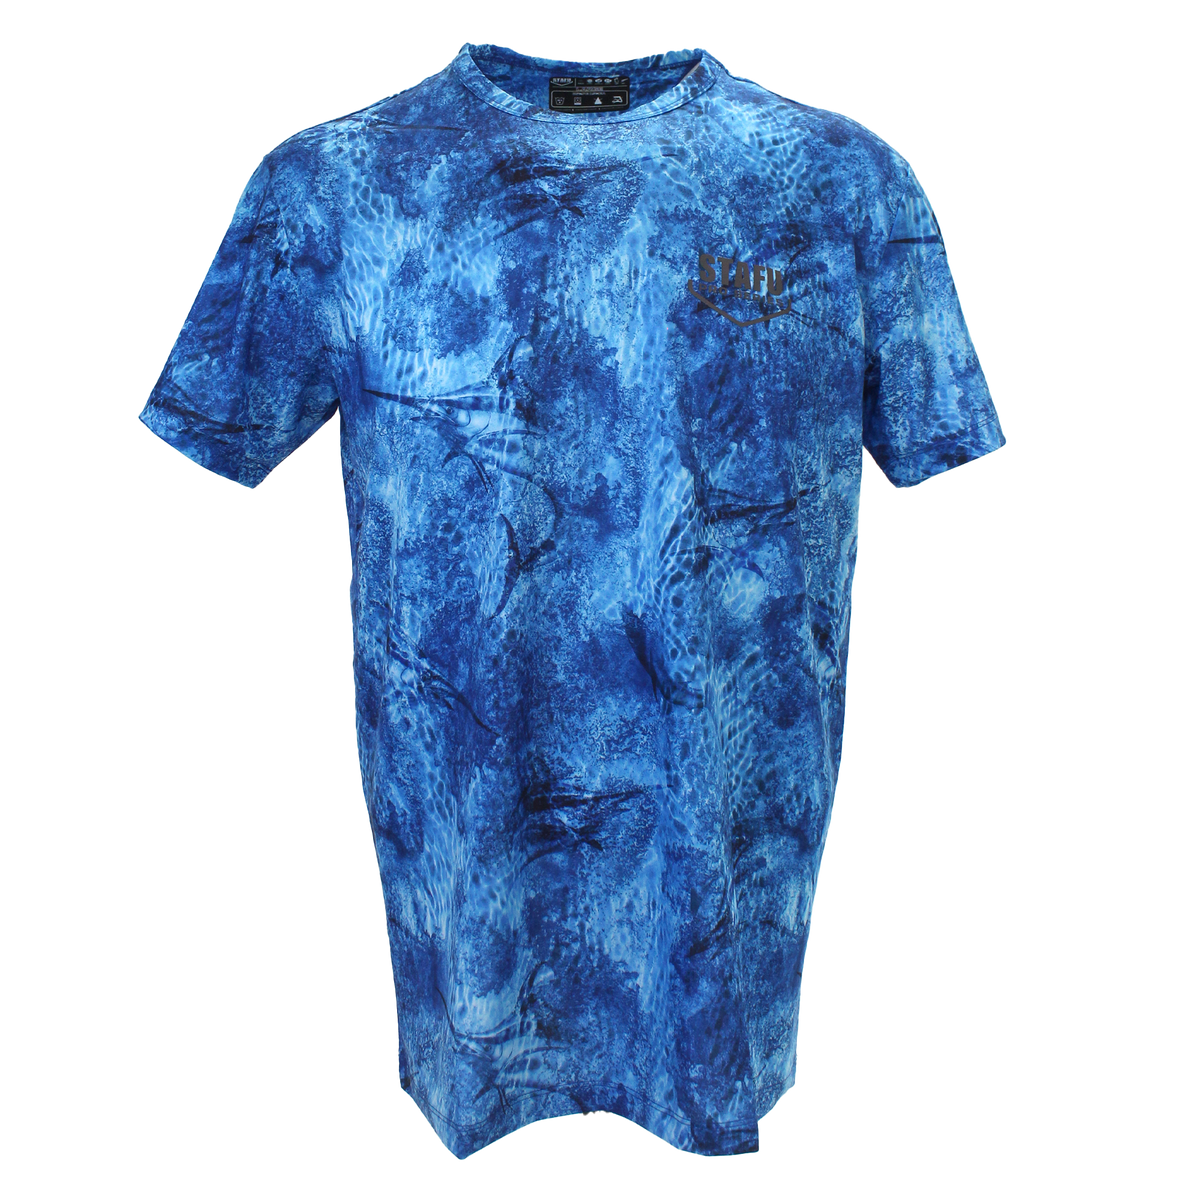 .99 Men's Short Sleeve Ultra Light Fisherman Sailor Marlin Mania Patterned Blue UV Protected Shirt